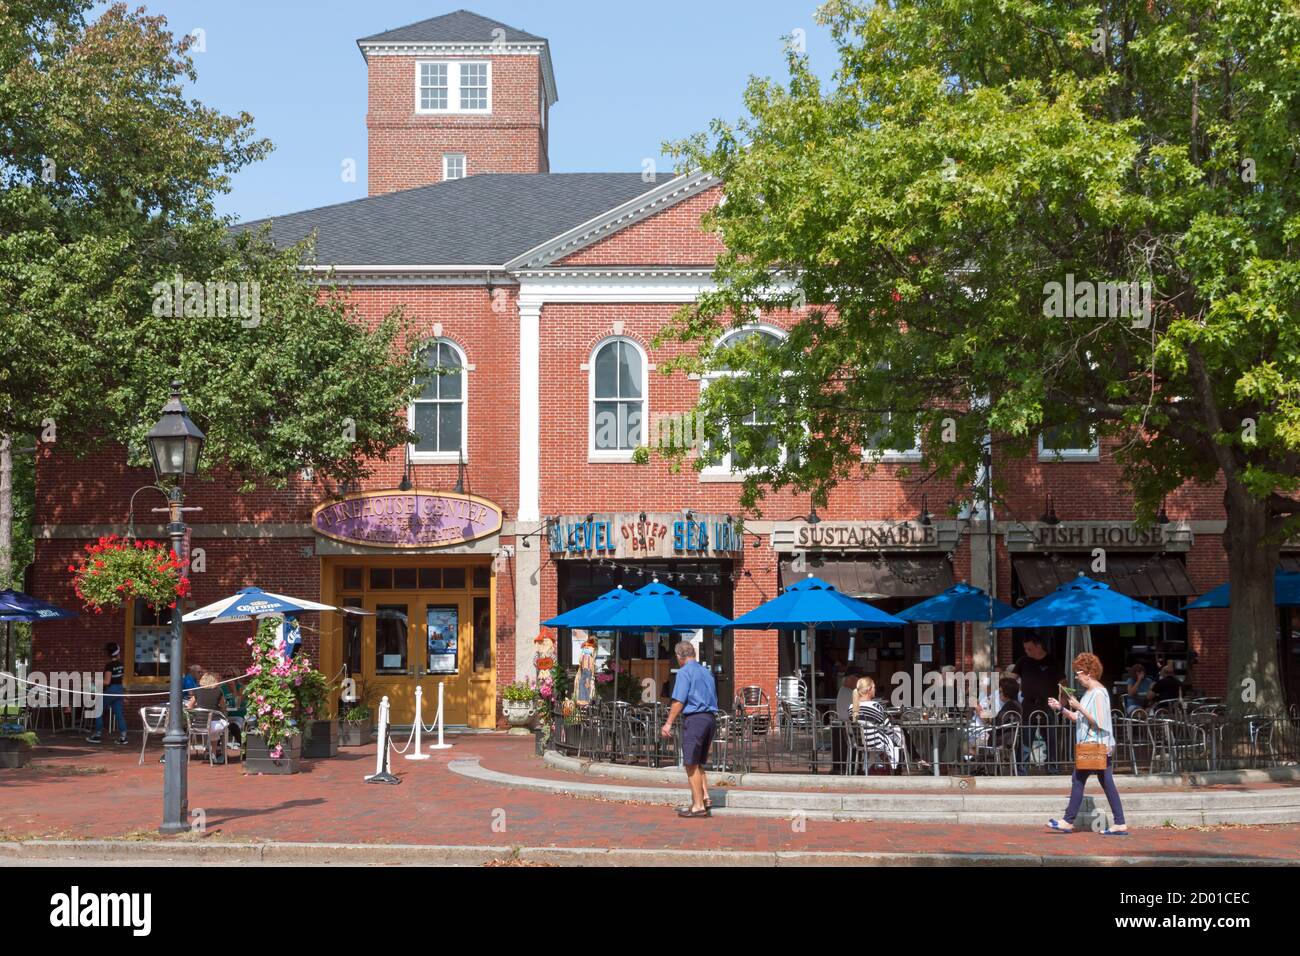 Sea Level Oyster Bar Restaurant dans l'historique Market Square, Newburyport, Massachusetts, États-Unis, États-Unis Banque D'Images